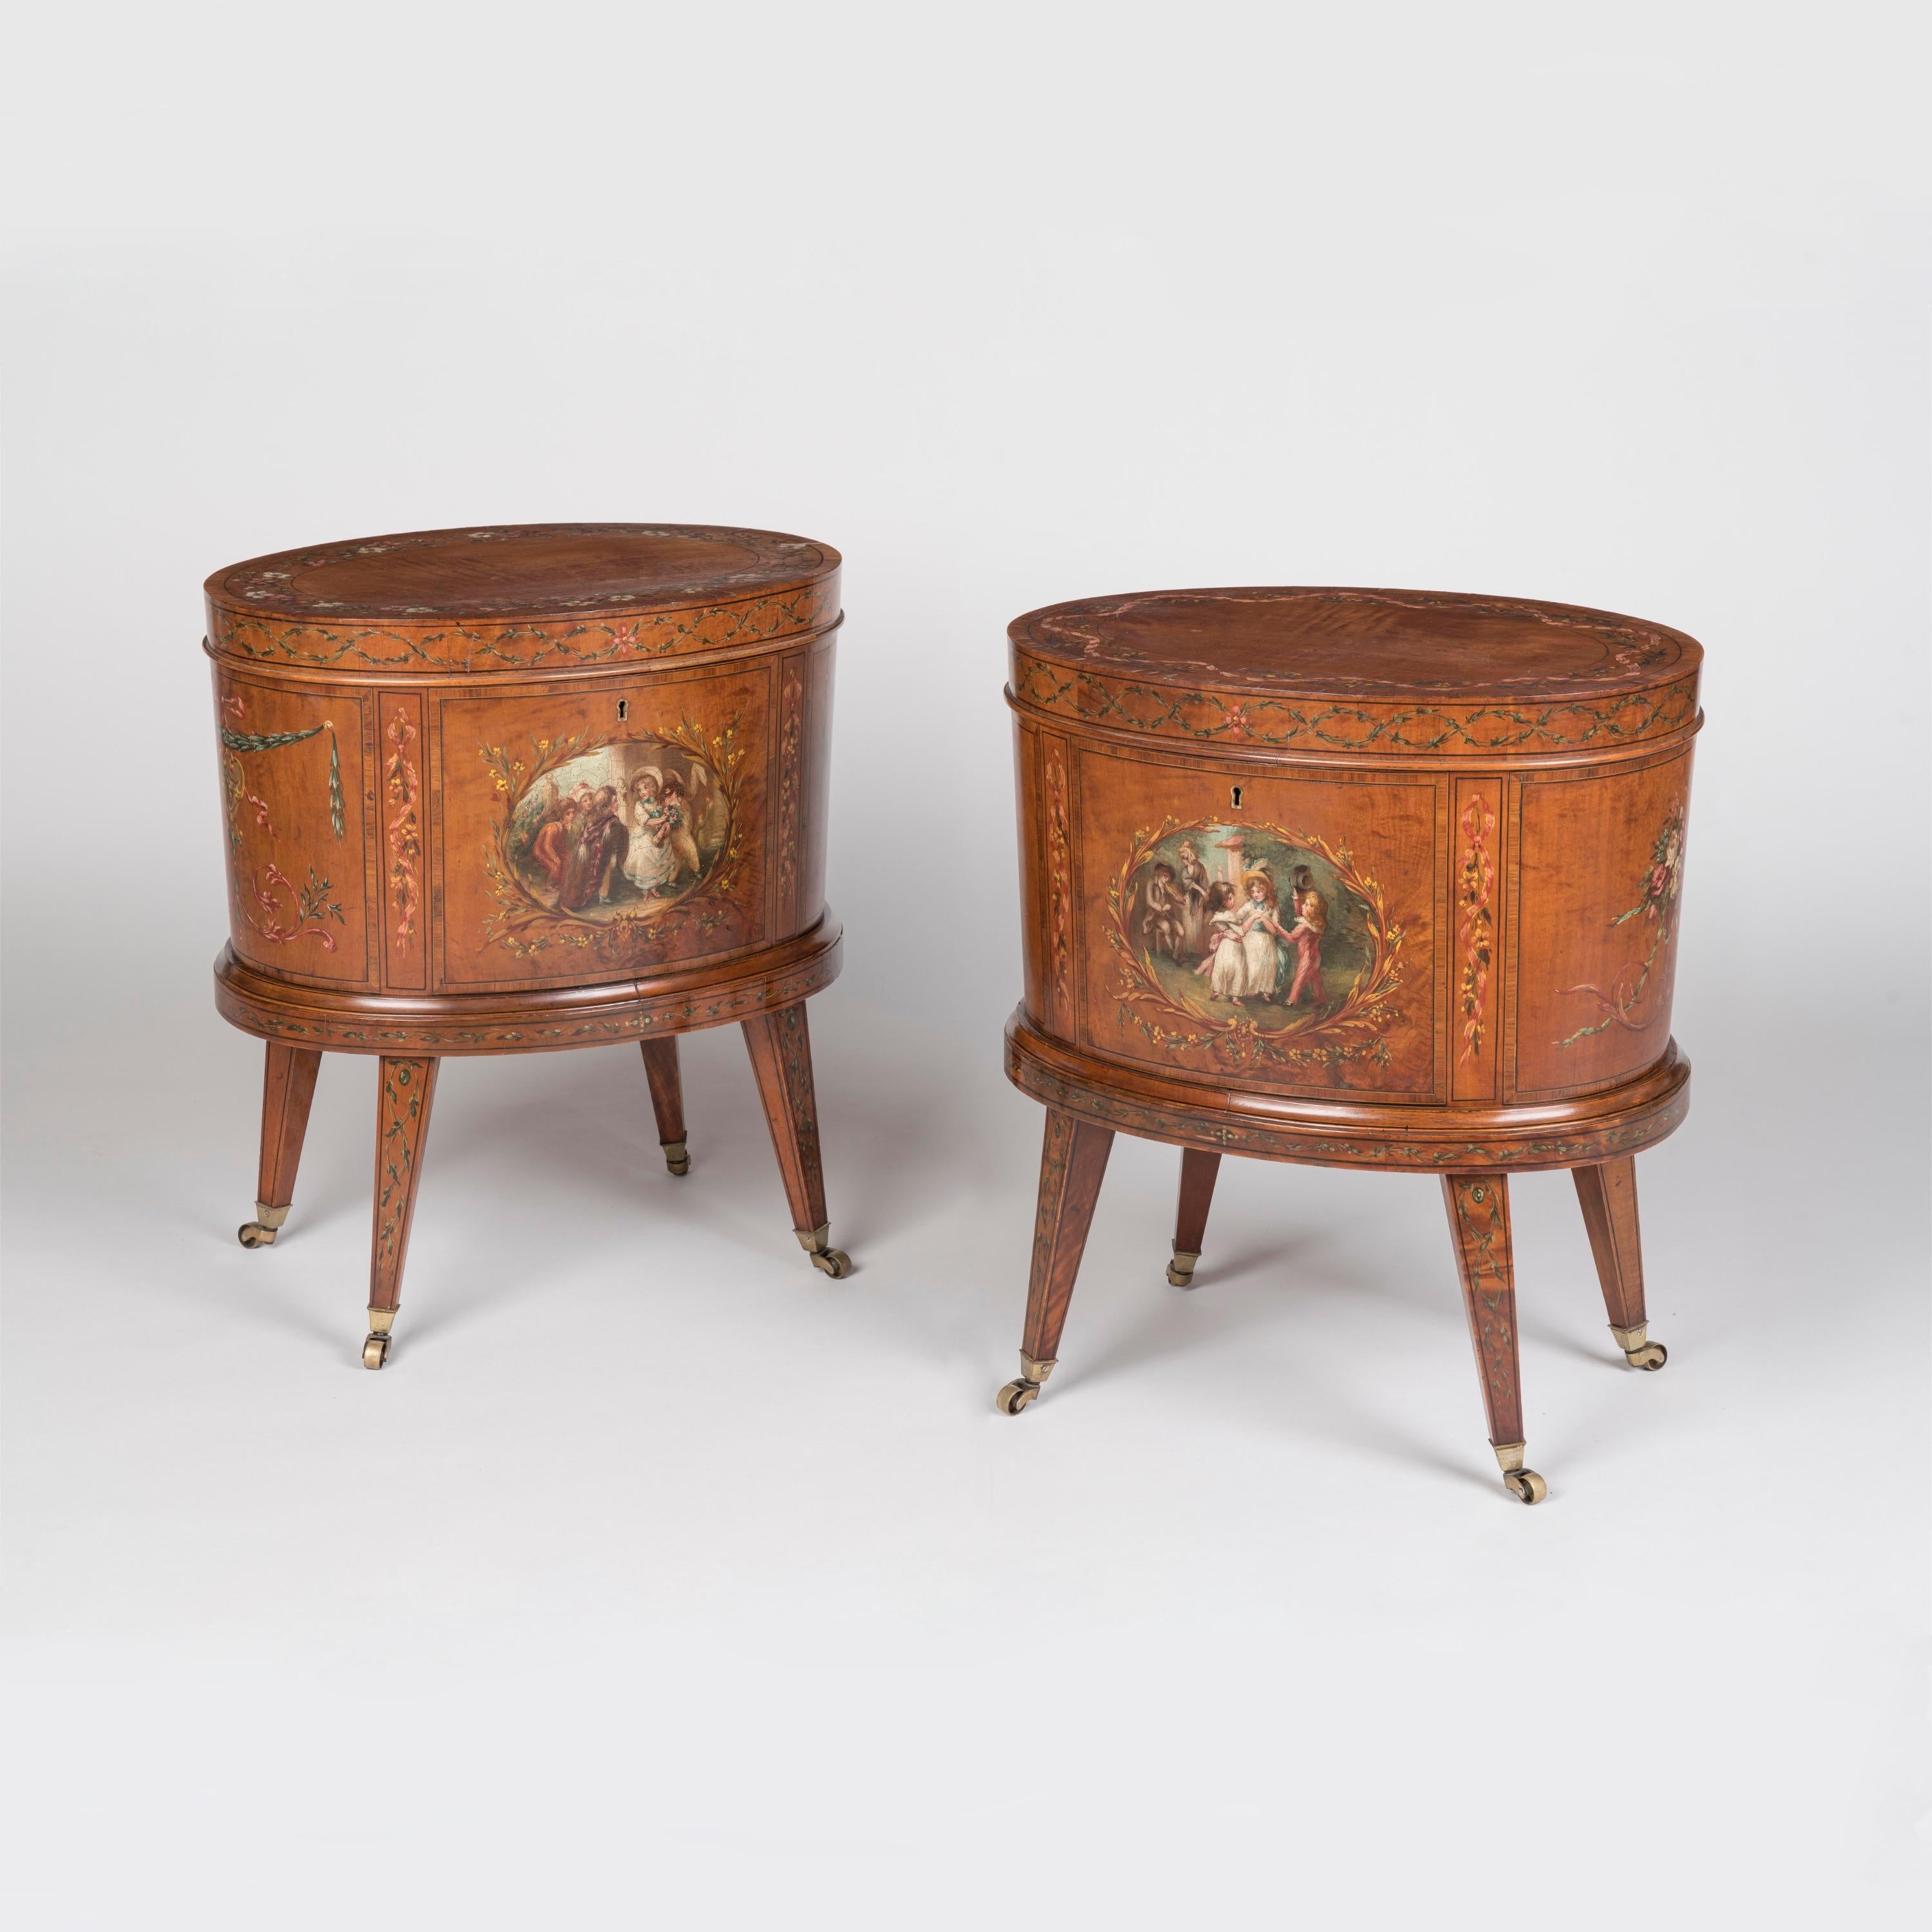 Une rare paire de Cellarettes 
à la manière d'Adams

De forme elliptique, construits en bois satiné, peints à la main d'attributs floraux et de cartouches de style 